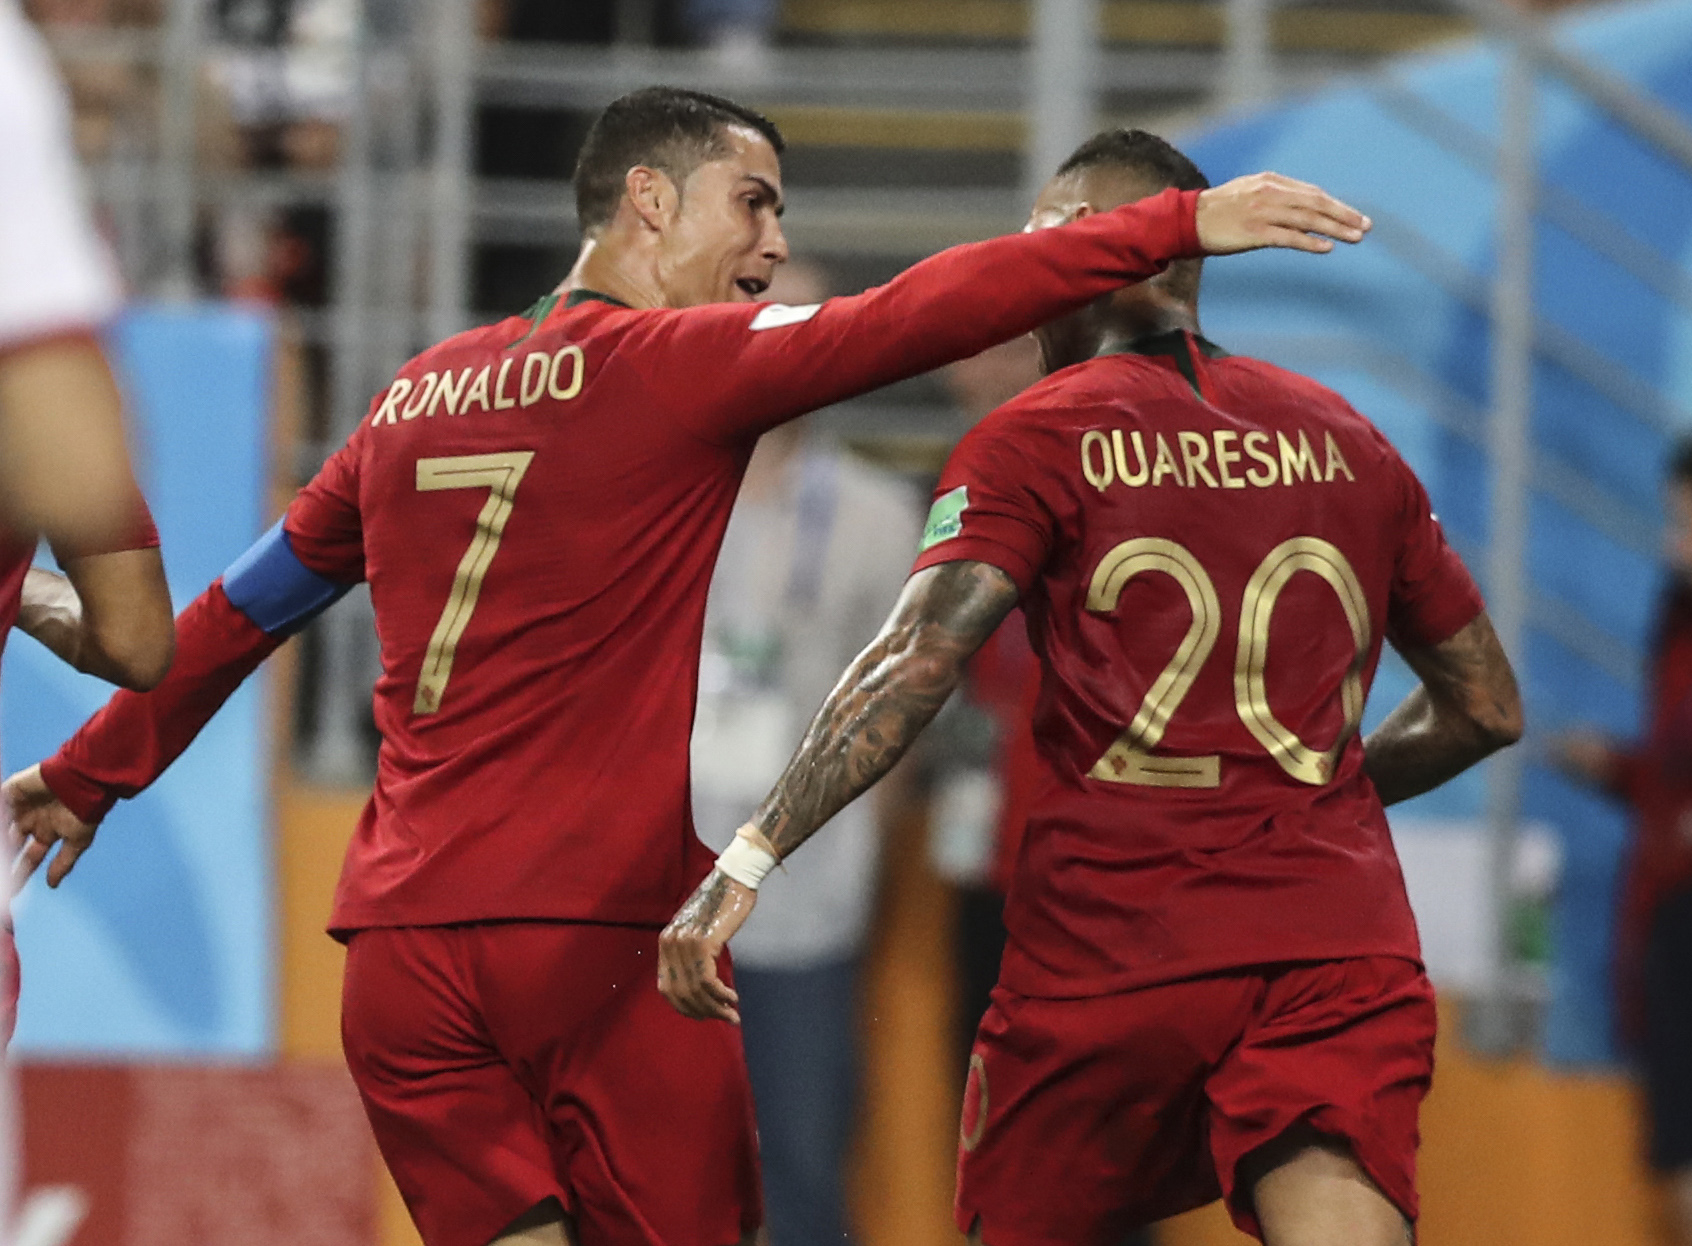 Soccer: World Cup-Iran vs Portugal